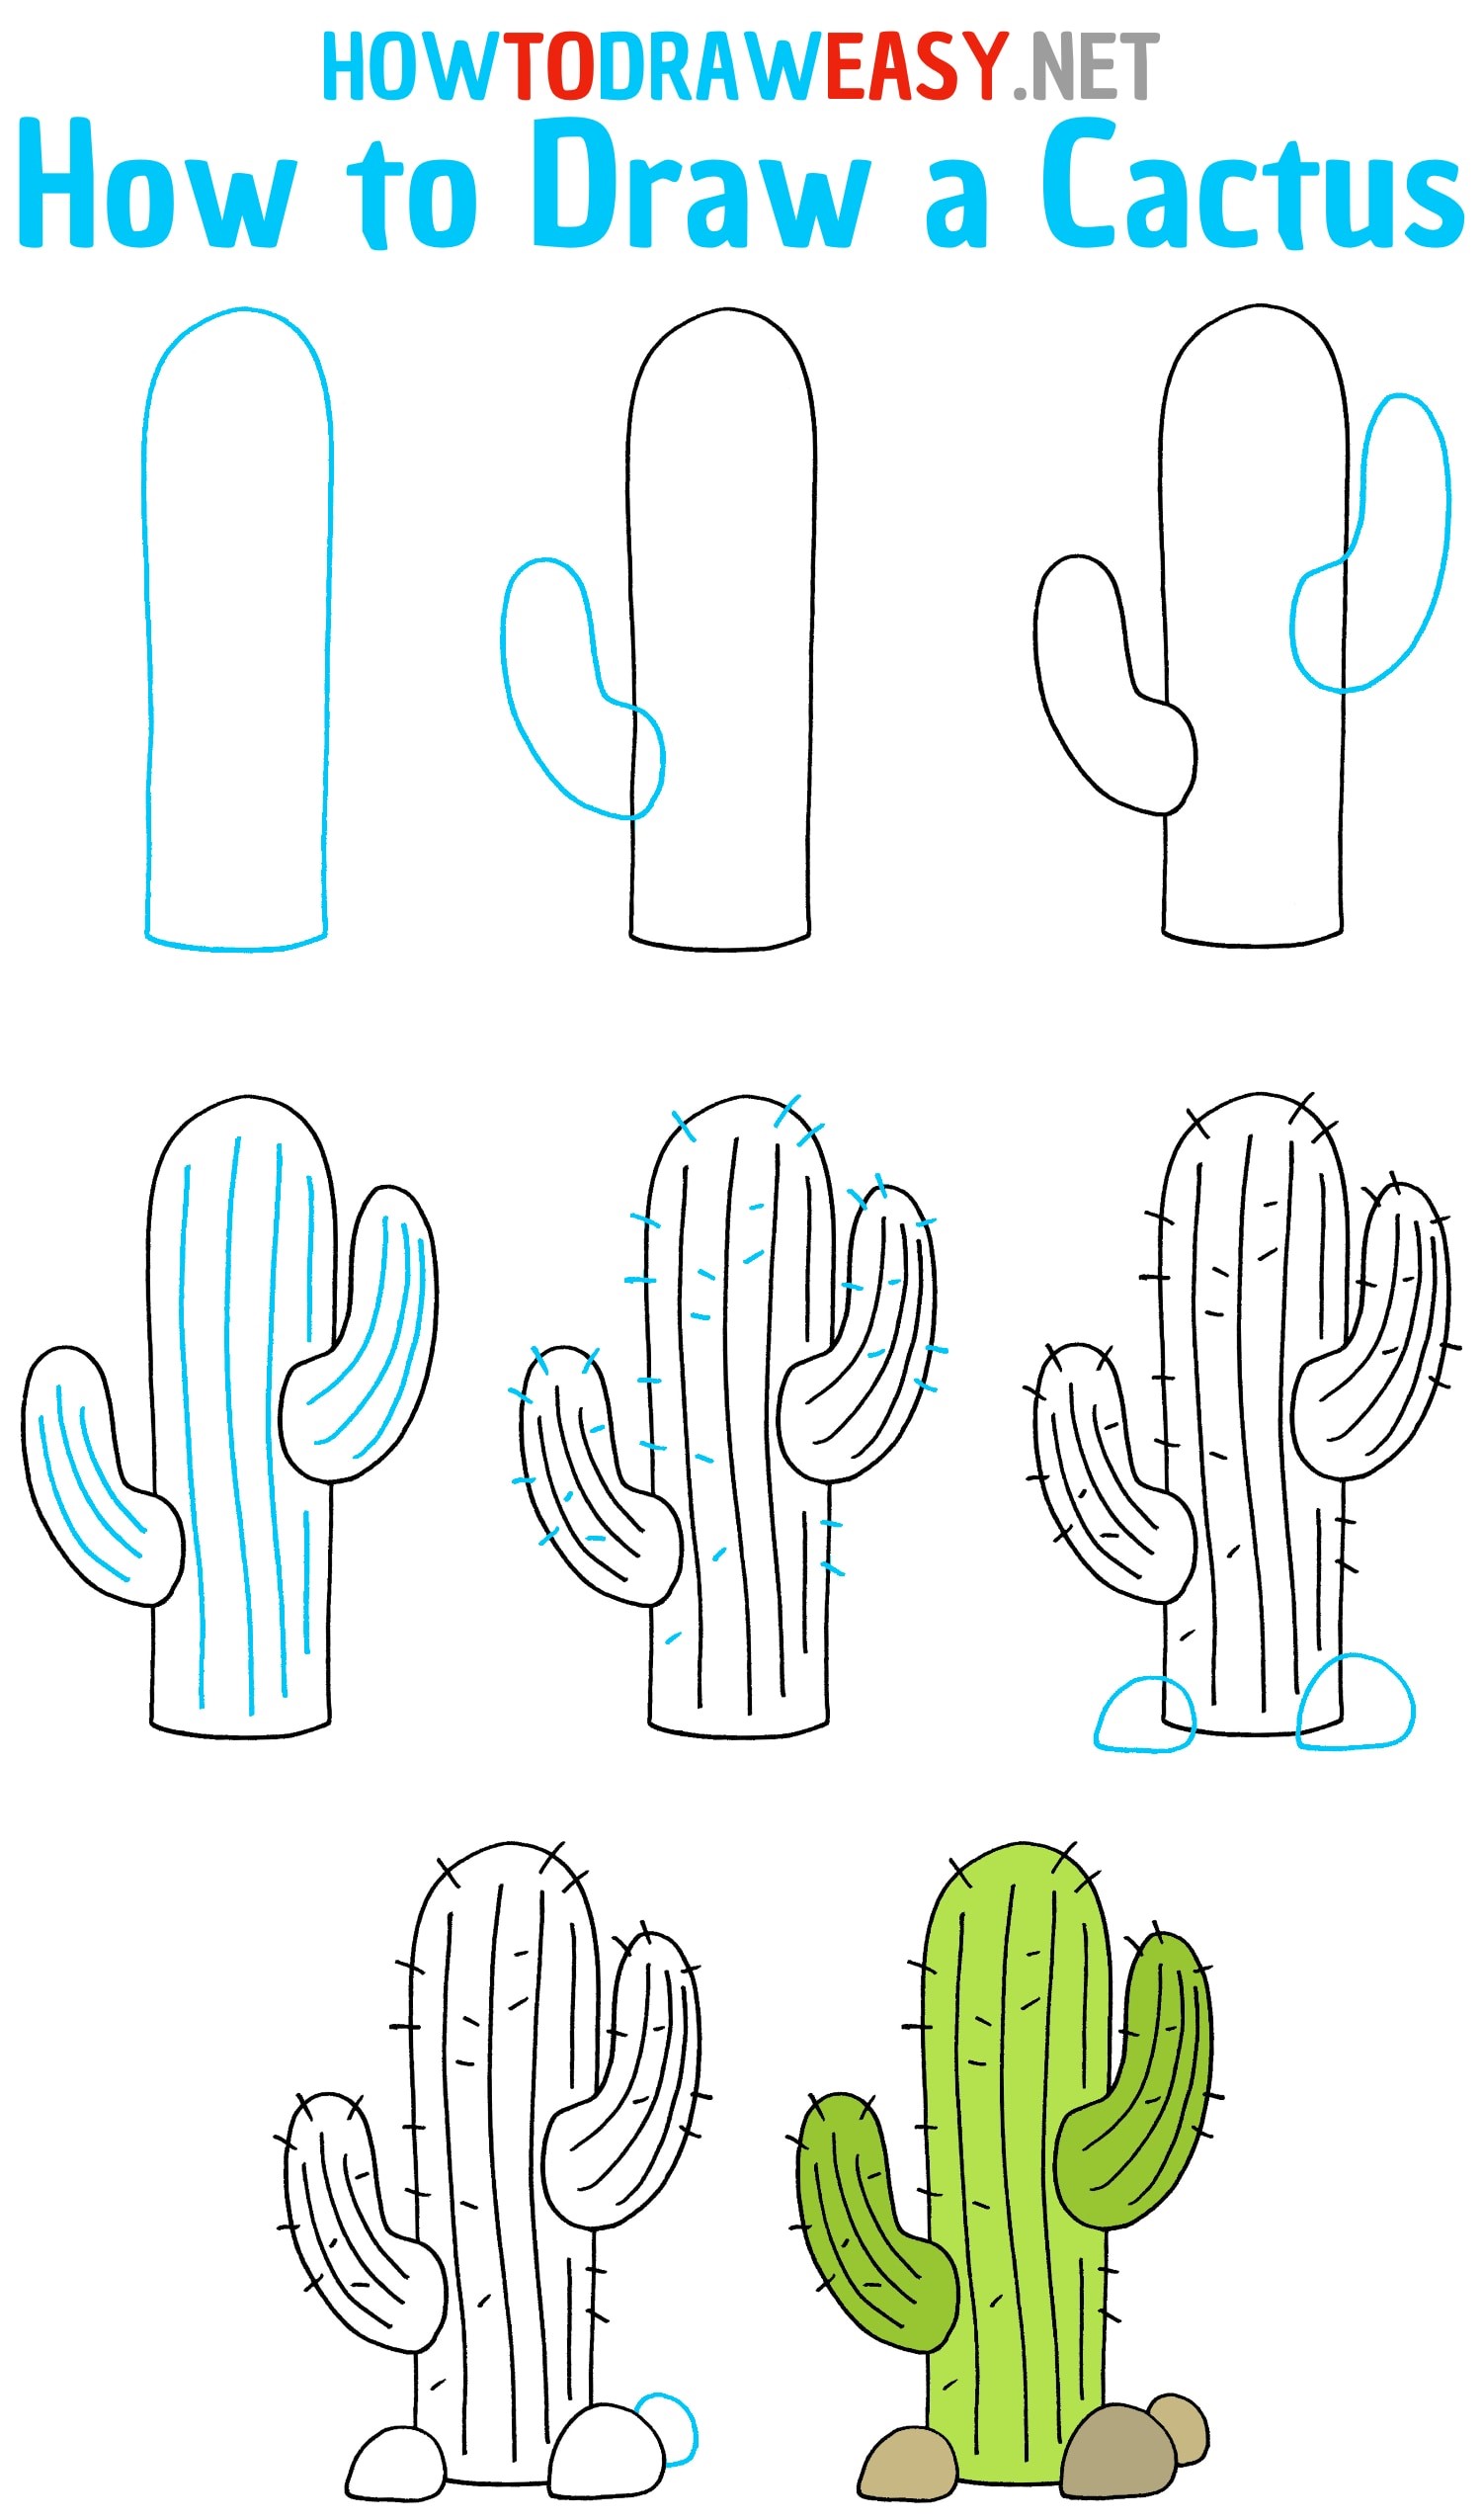 Kaktus-Idee 5 zeichnen ideen